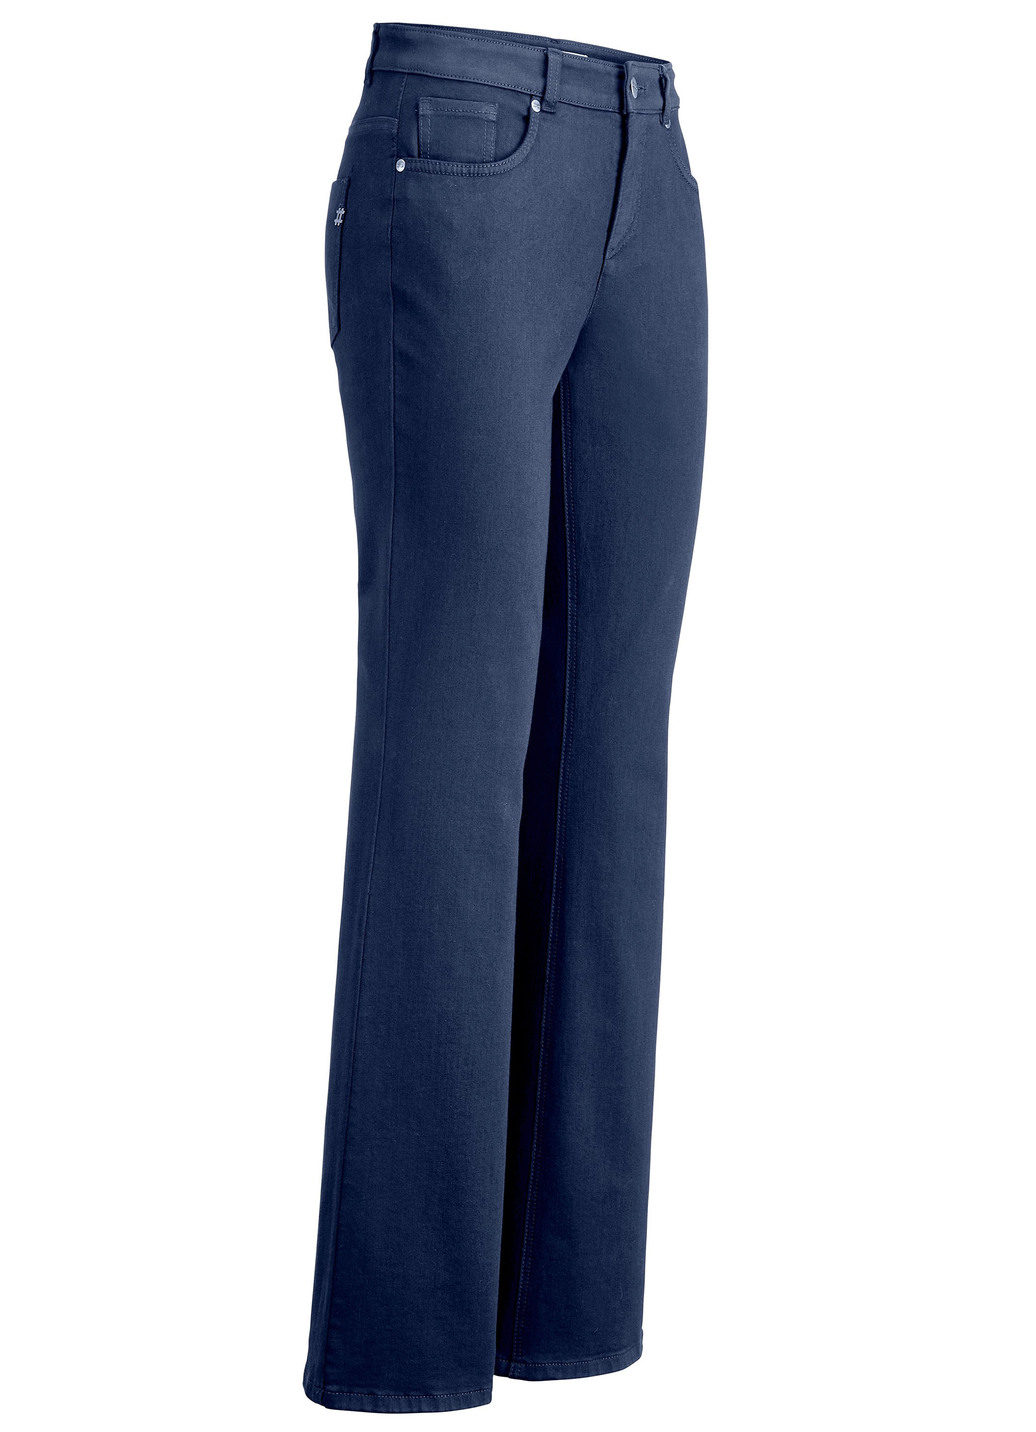 Magic-Jeans mit modisch weiterem Beinverlauf, Jeansblau, Größe 48 von ASCARI